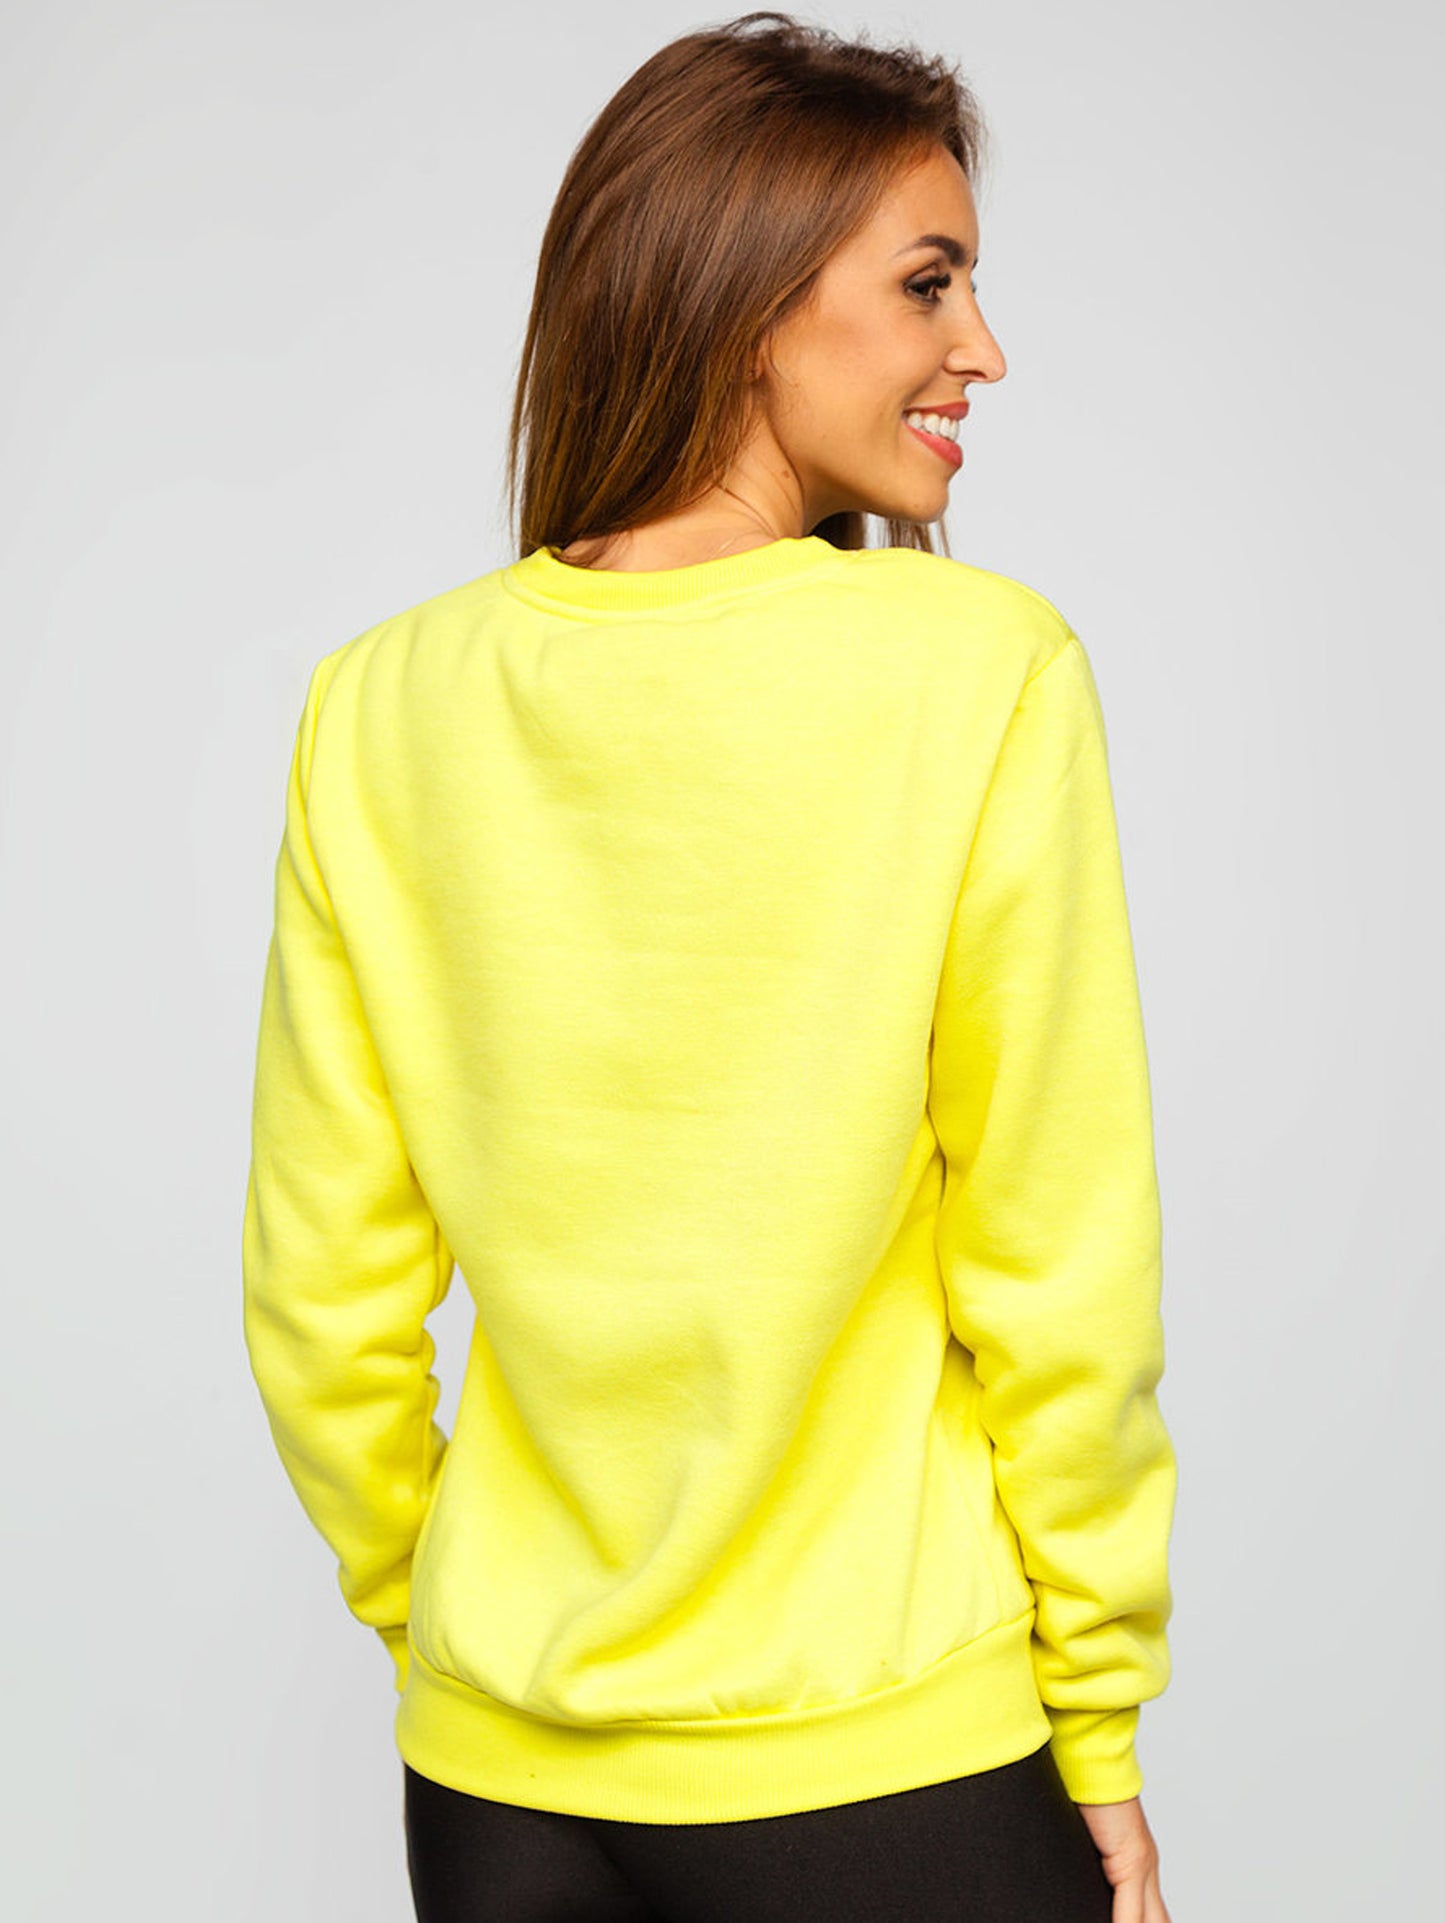 Women's Basic Yellow Sweatshirt